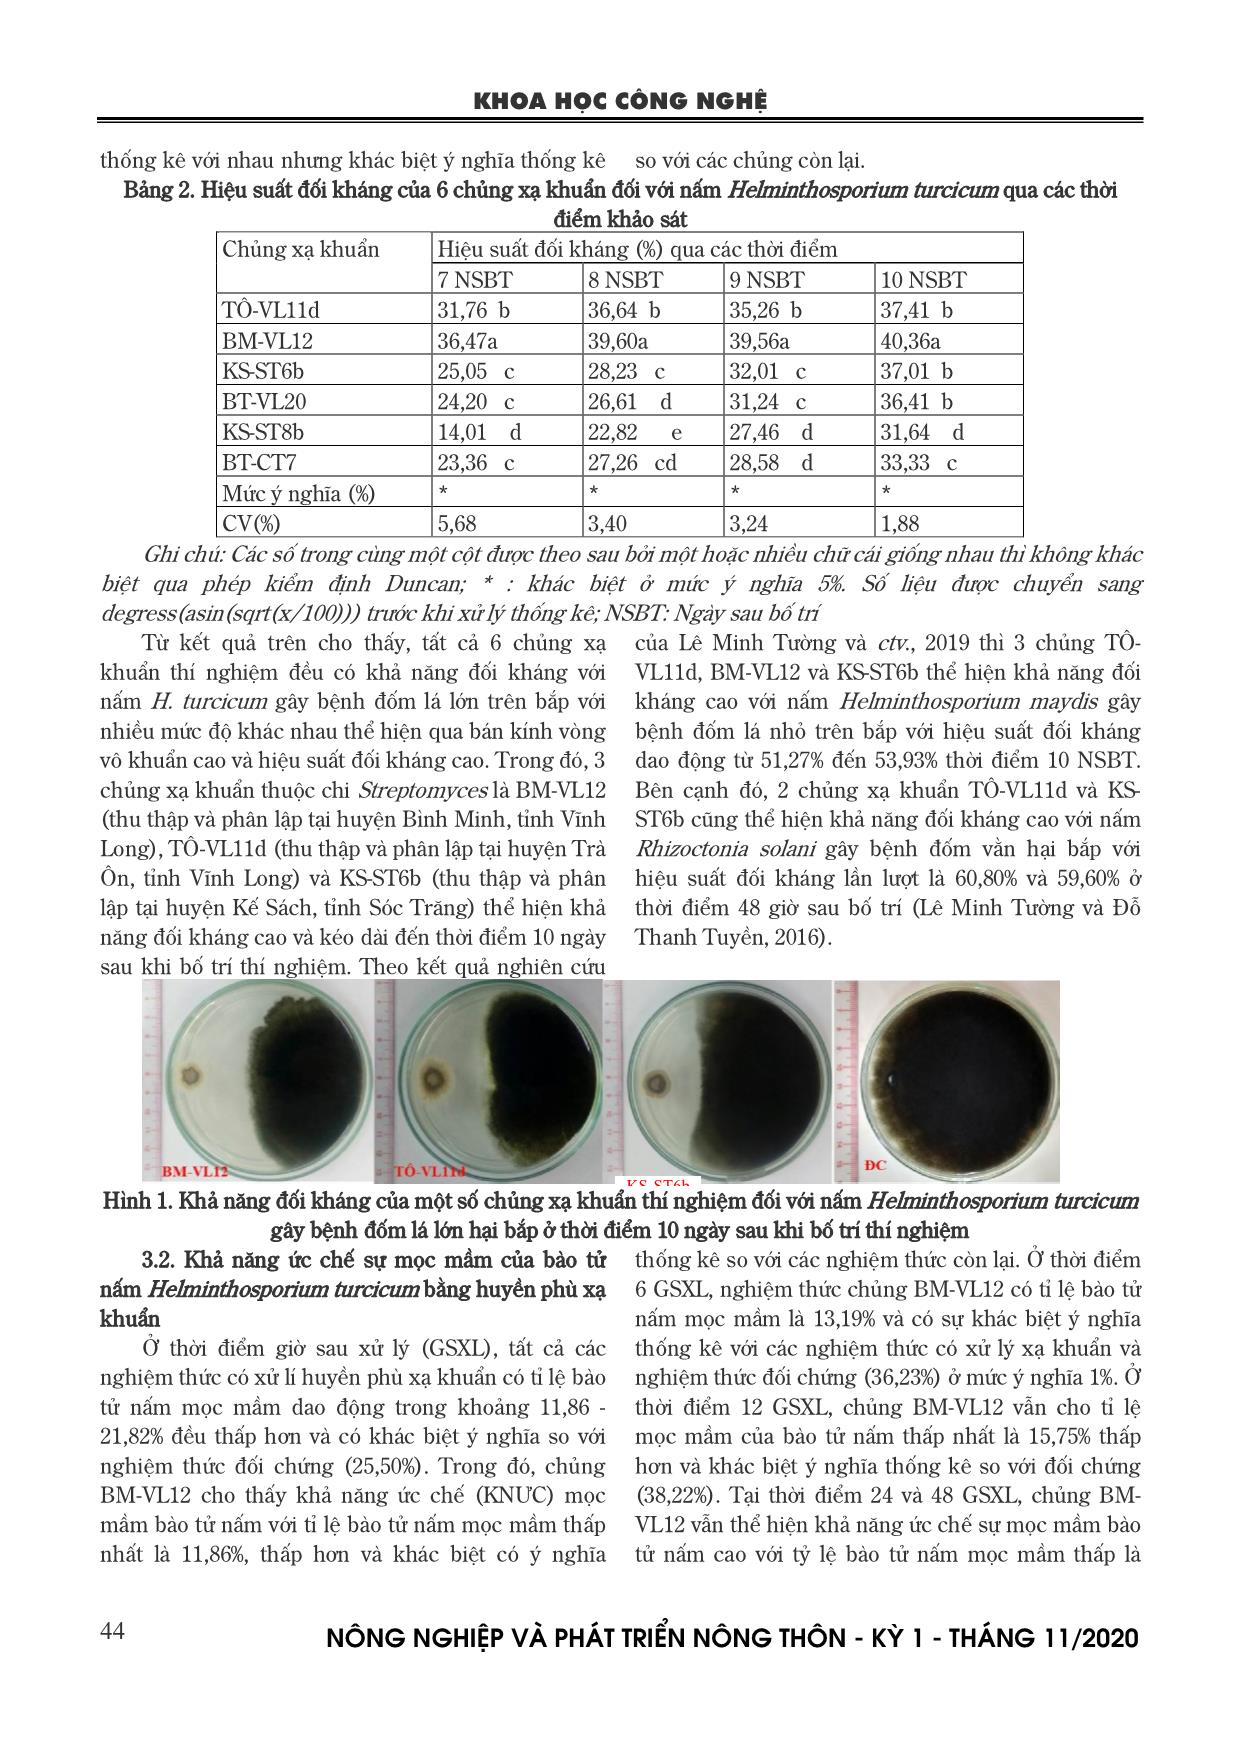 Khả năng đối kháng của xạ khuẩn đối với nấm Helminthosporium turcicum gây bệnh đốm lá lớn trên bắp trang 4